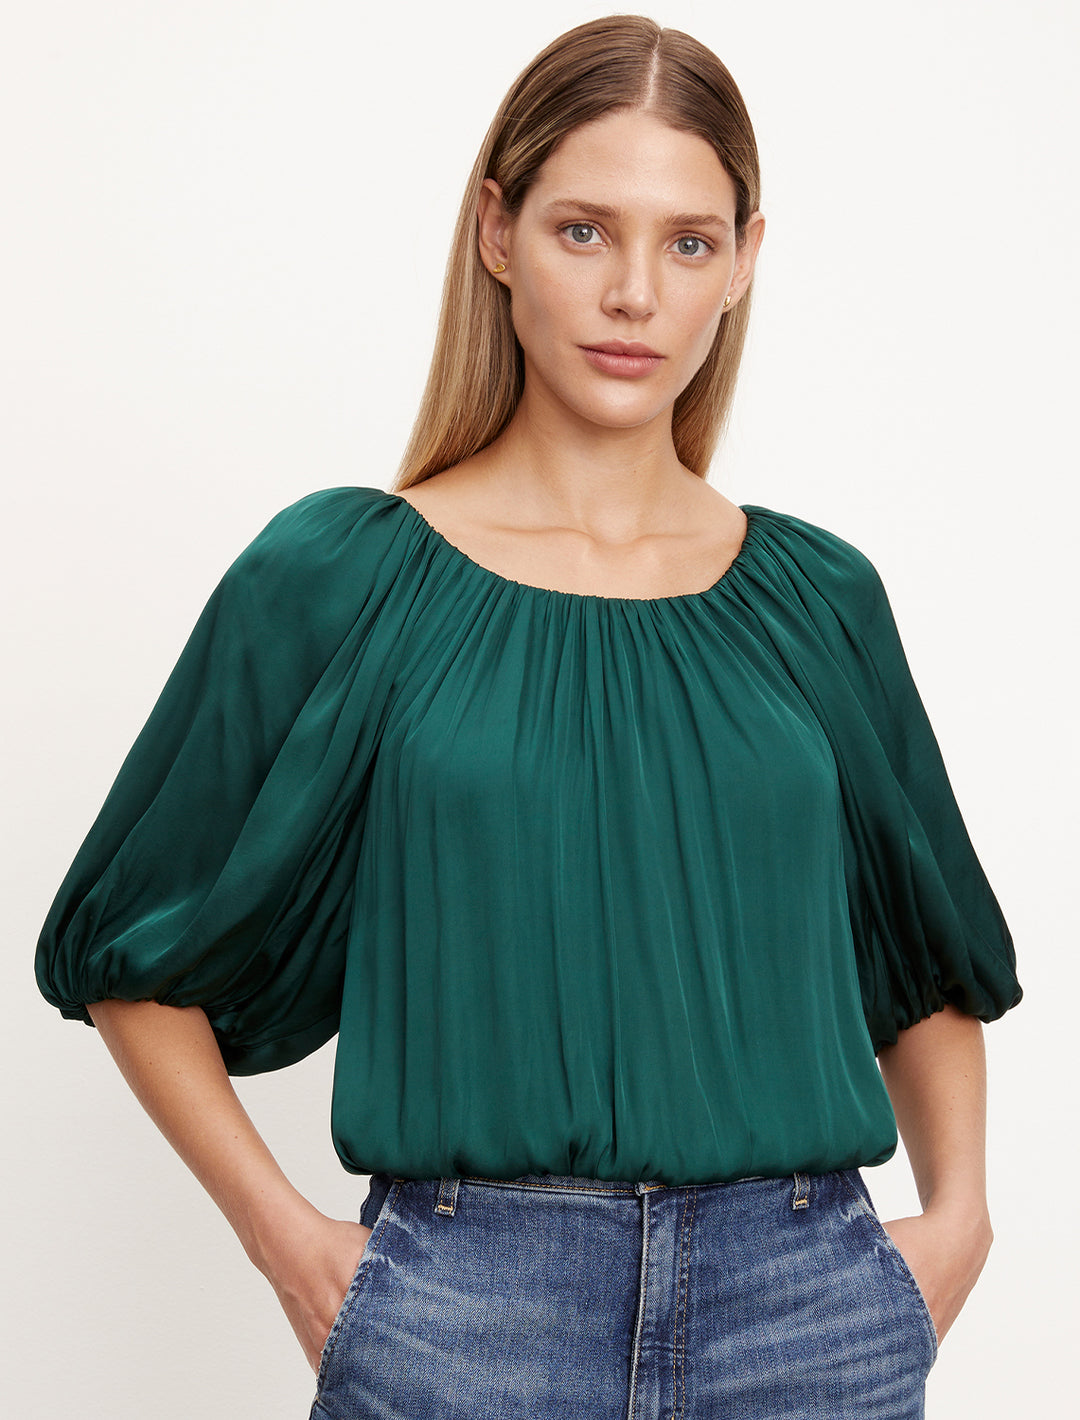 Model wearing Velvet's tami blouse in fern.